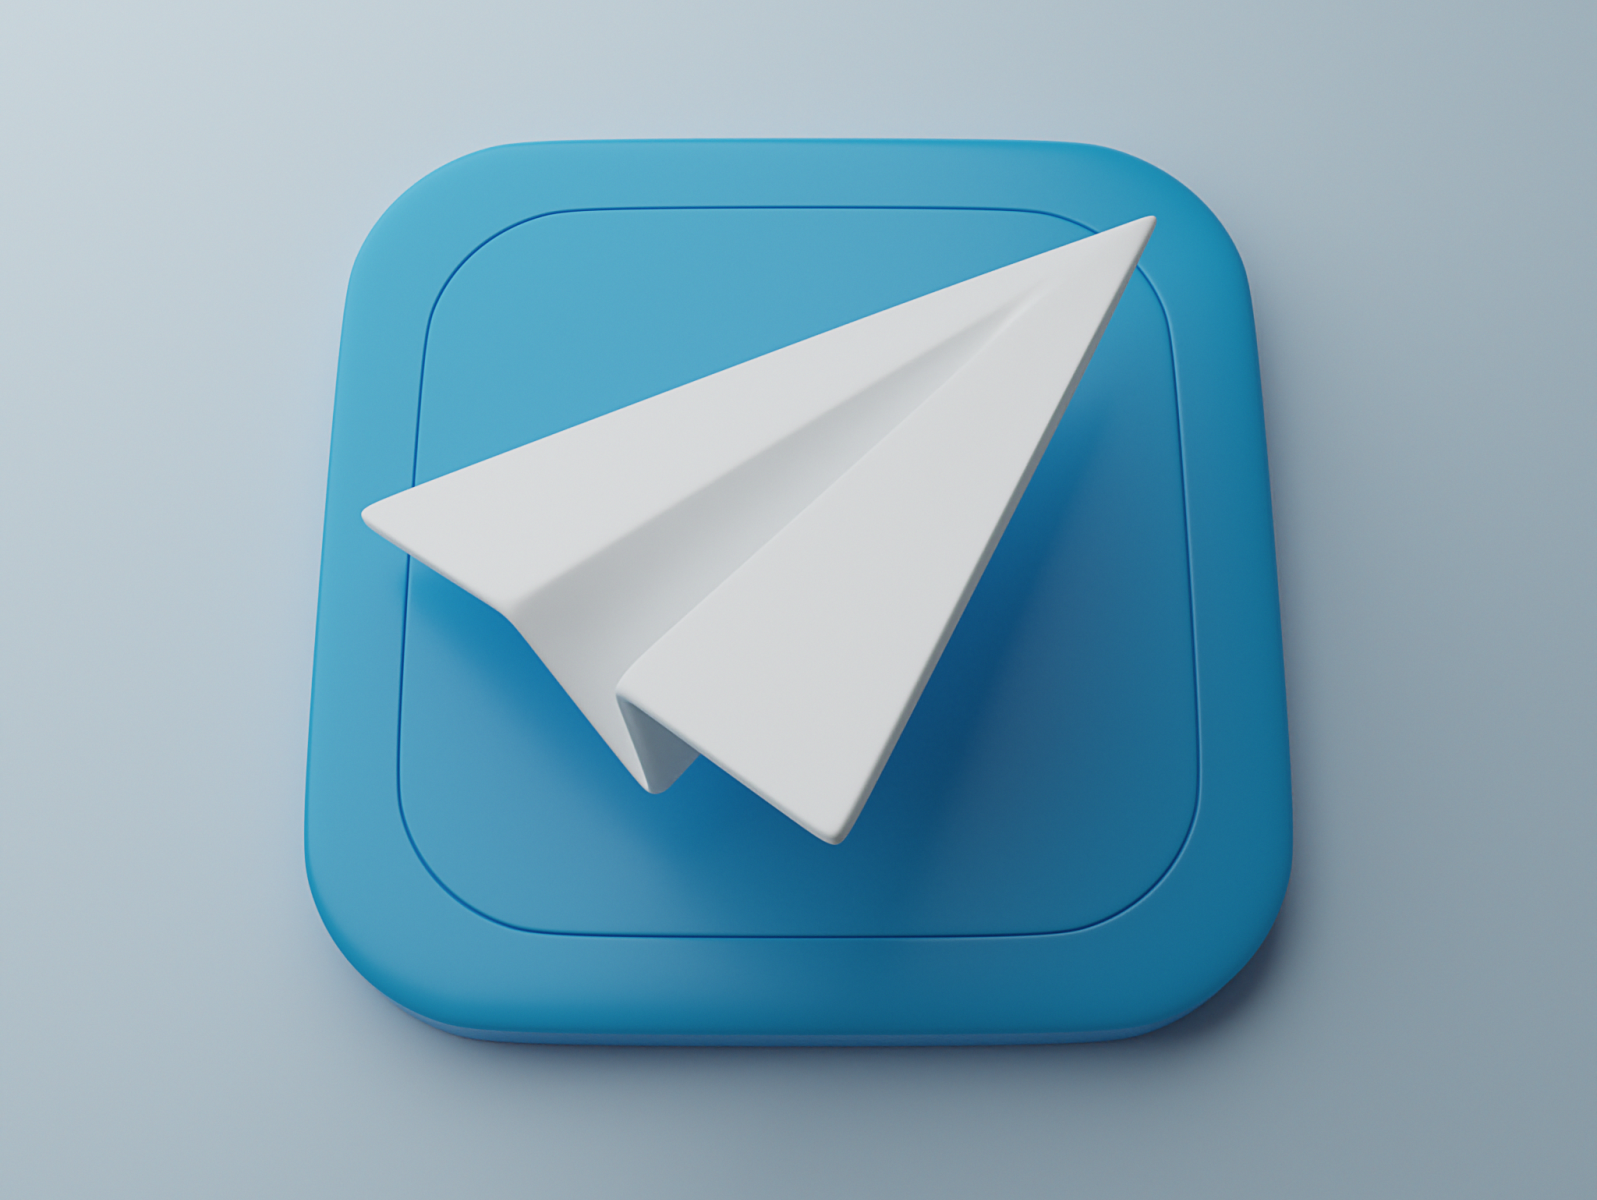 telegram messenger job interview